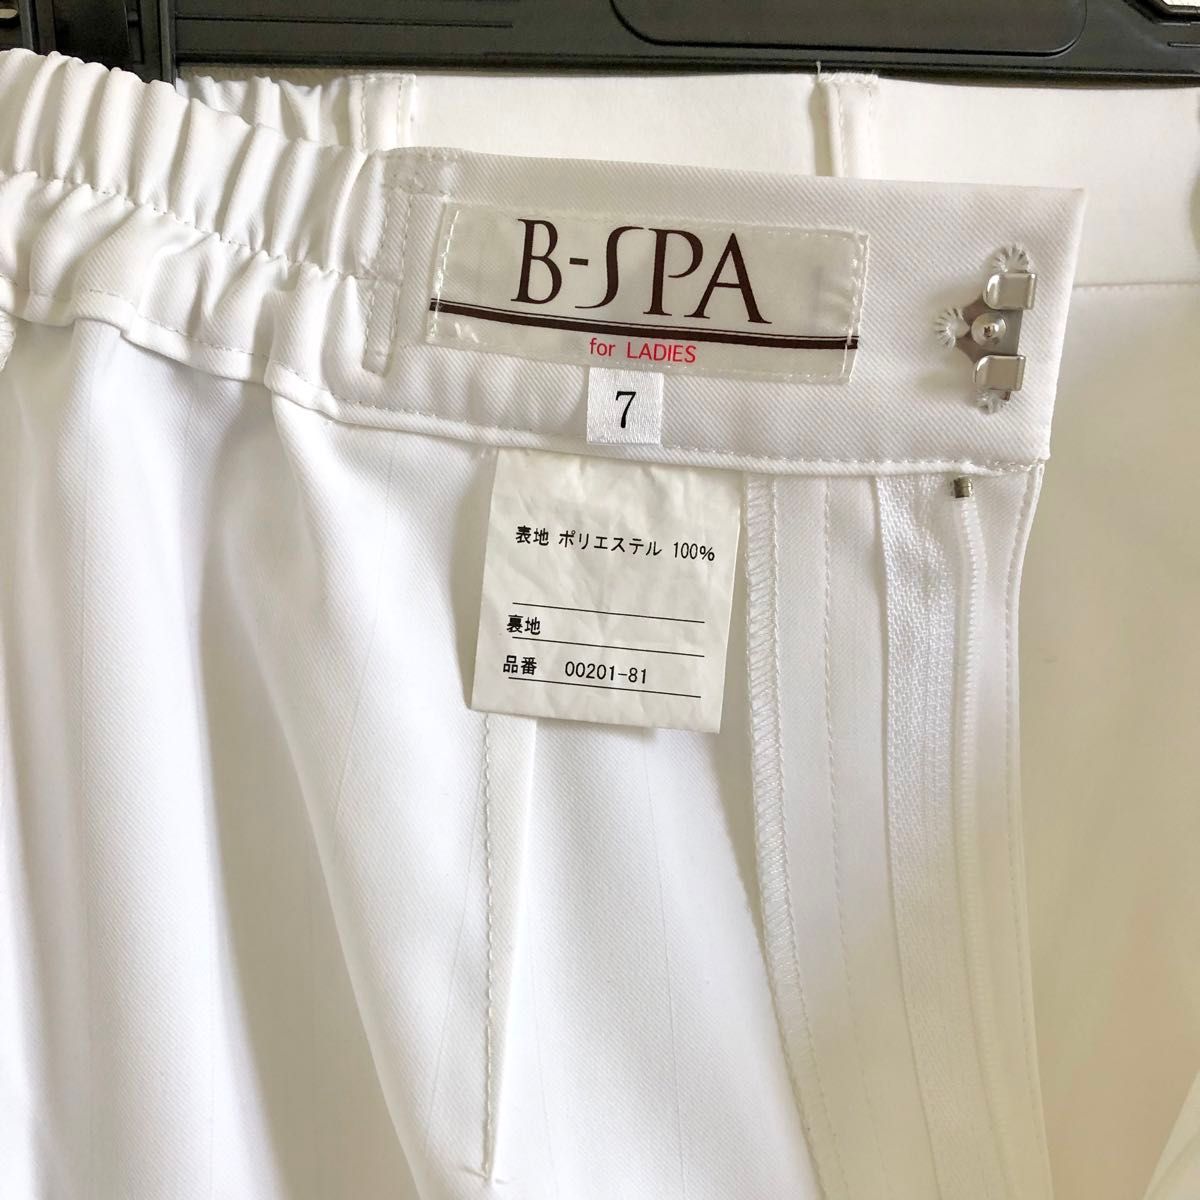 B-SPA ビースパ パンツ スラックス ユニフォーム 白衣 白 ホワイト 7号